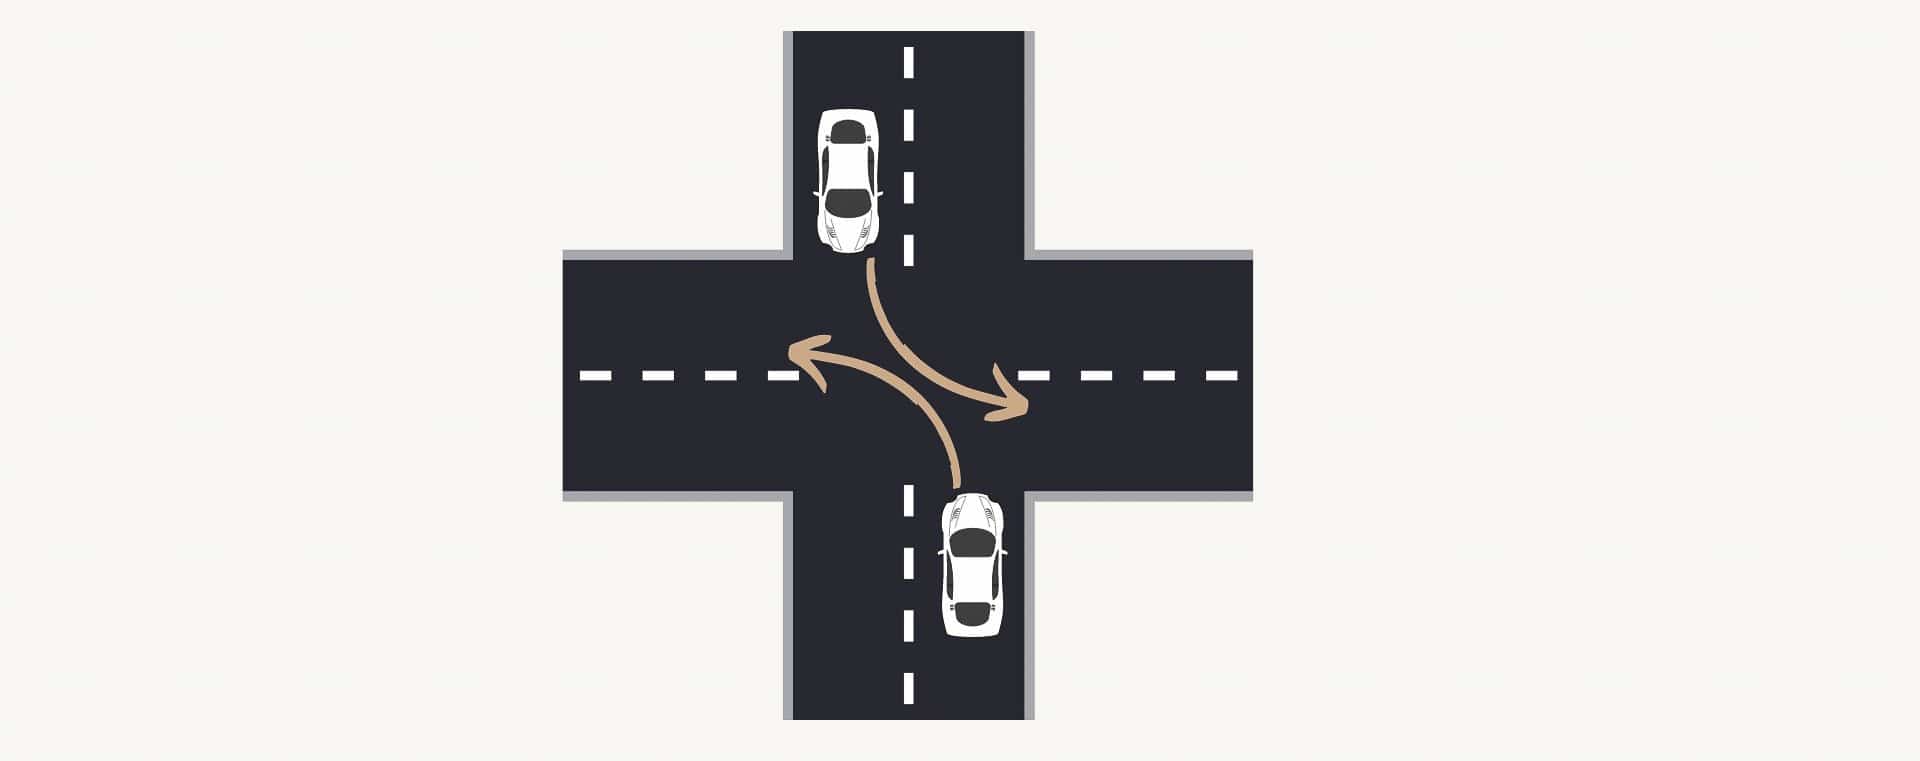 croisement intersection usa conduire une voiture aux états-unis